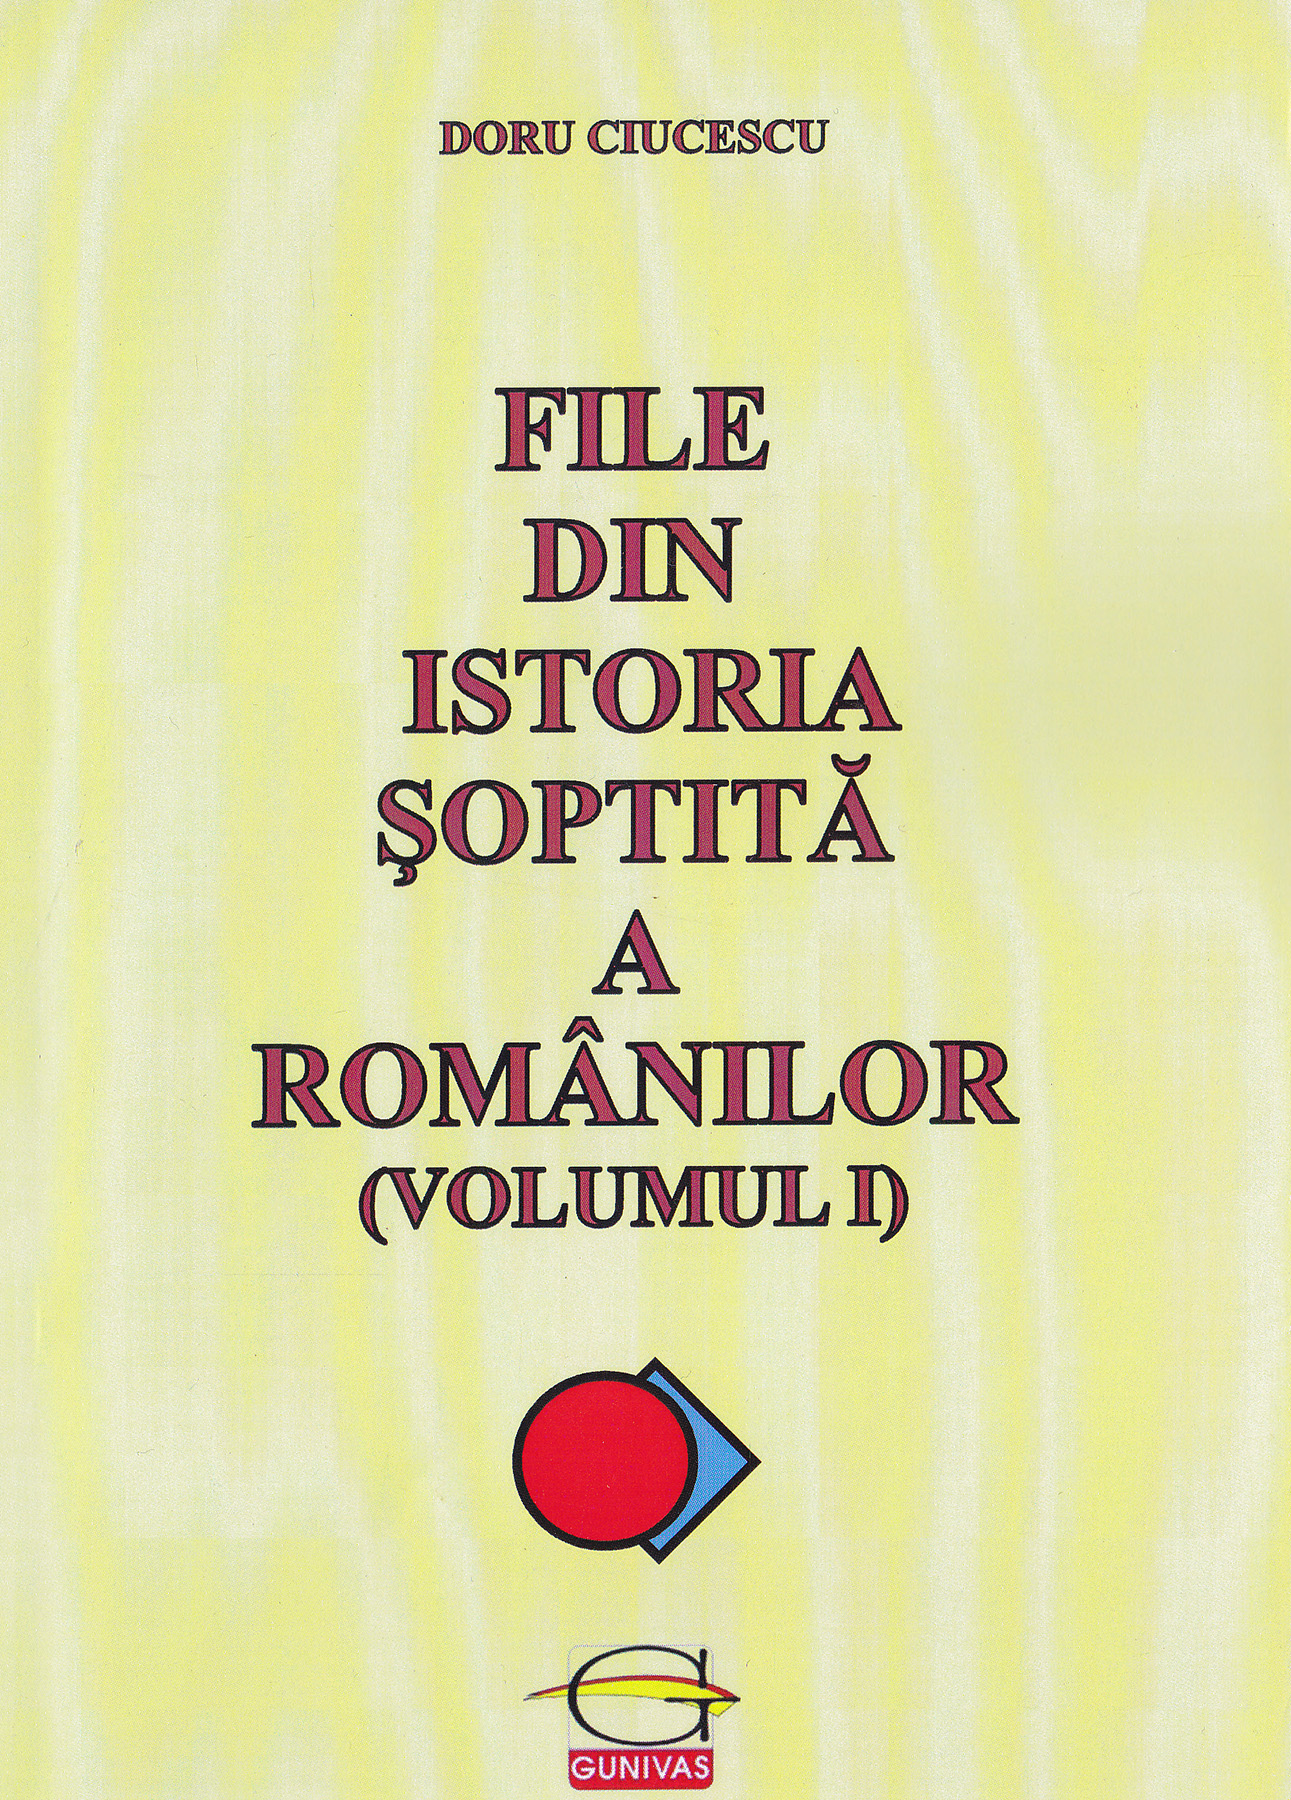 File din istoria soptita a romanilor (Volumul 1) | Doru Ciucescu carturesti.ro Carte